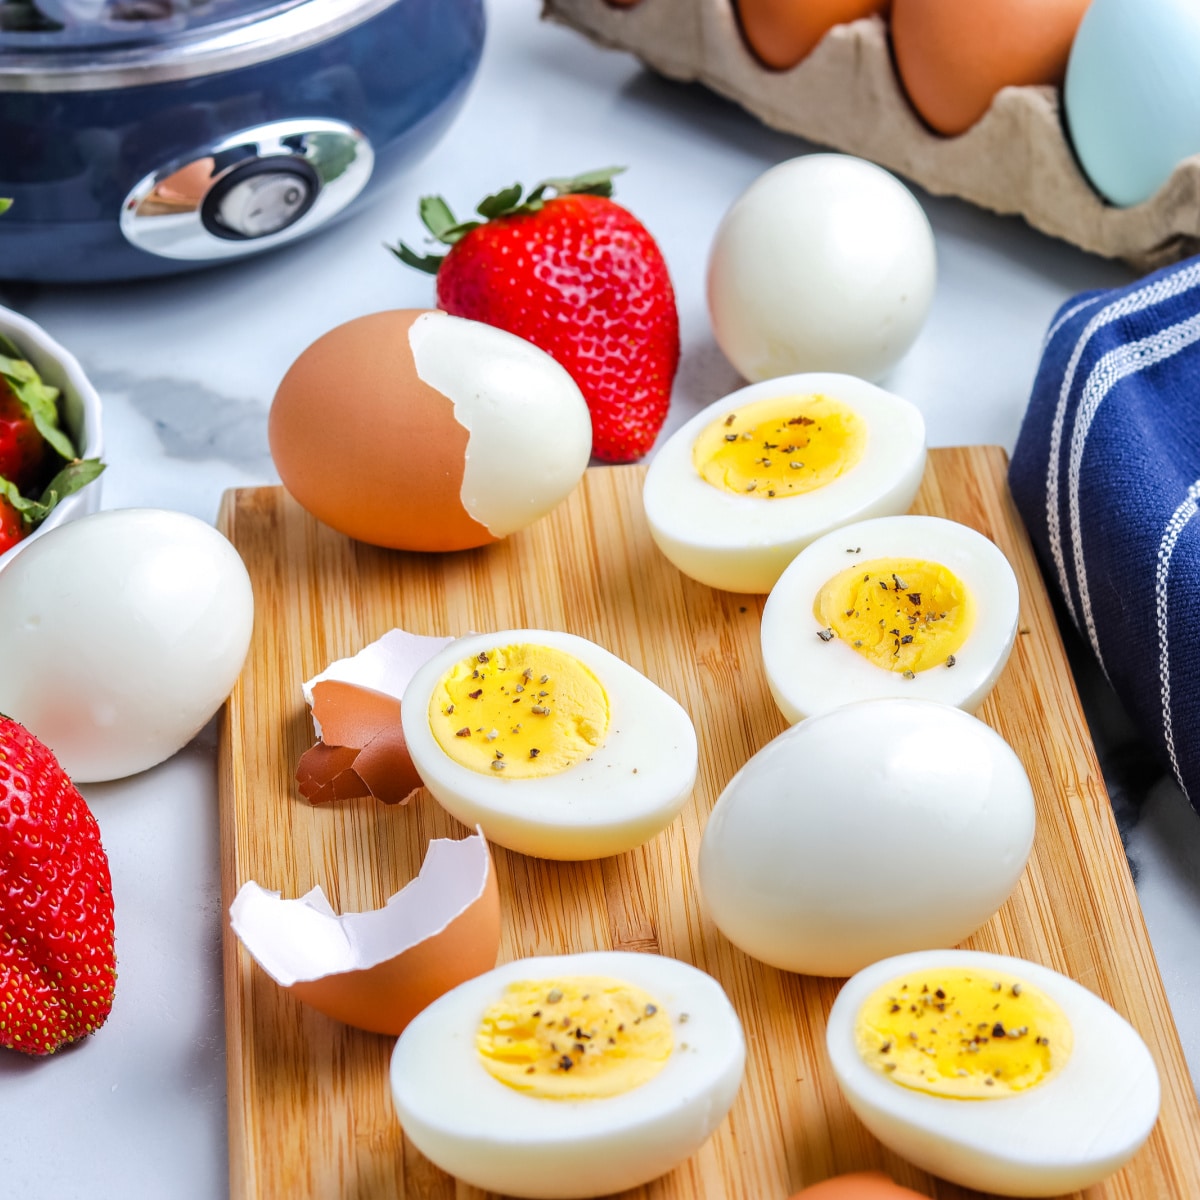 Hard-Boiled Eggs in an Egg Cooker